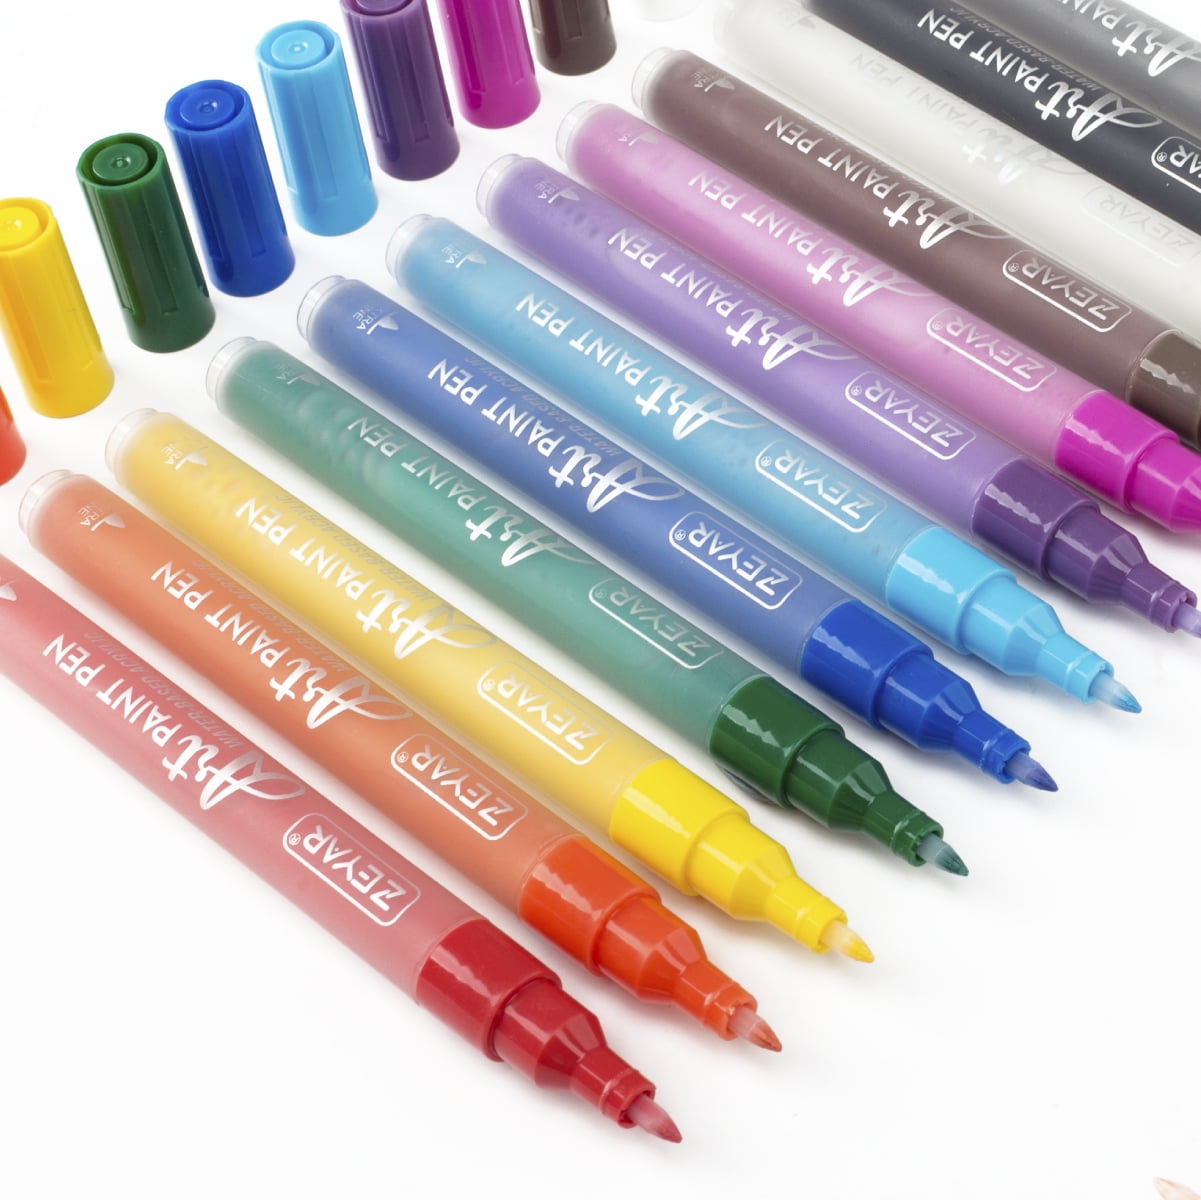 Acrylic Paint Pens For Rock Painting, Art Supplies 24 Colors Paint Pen –  amzdeal-US